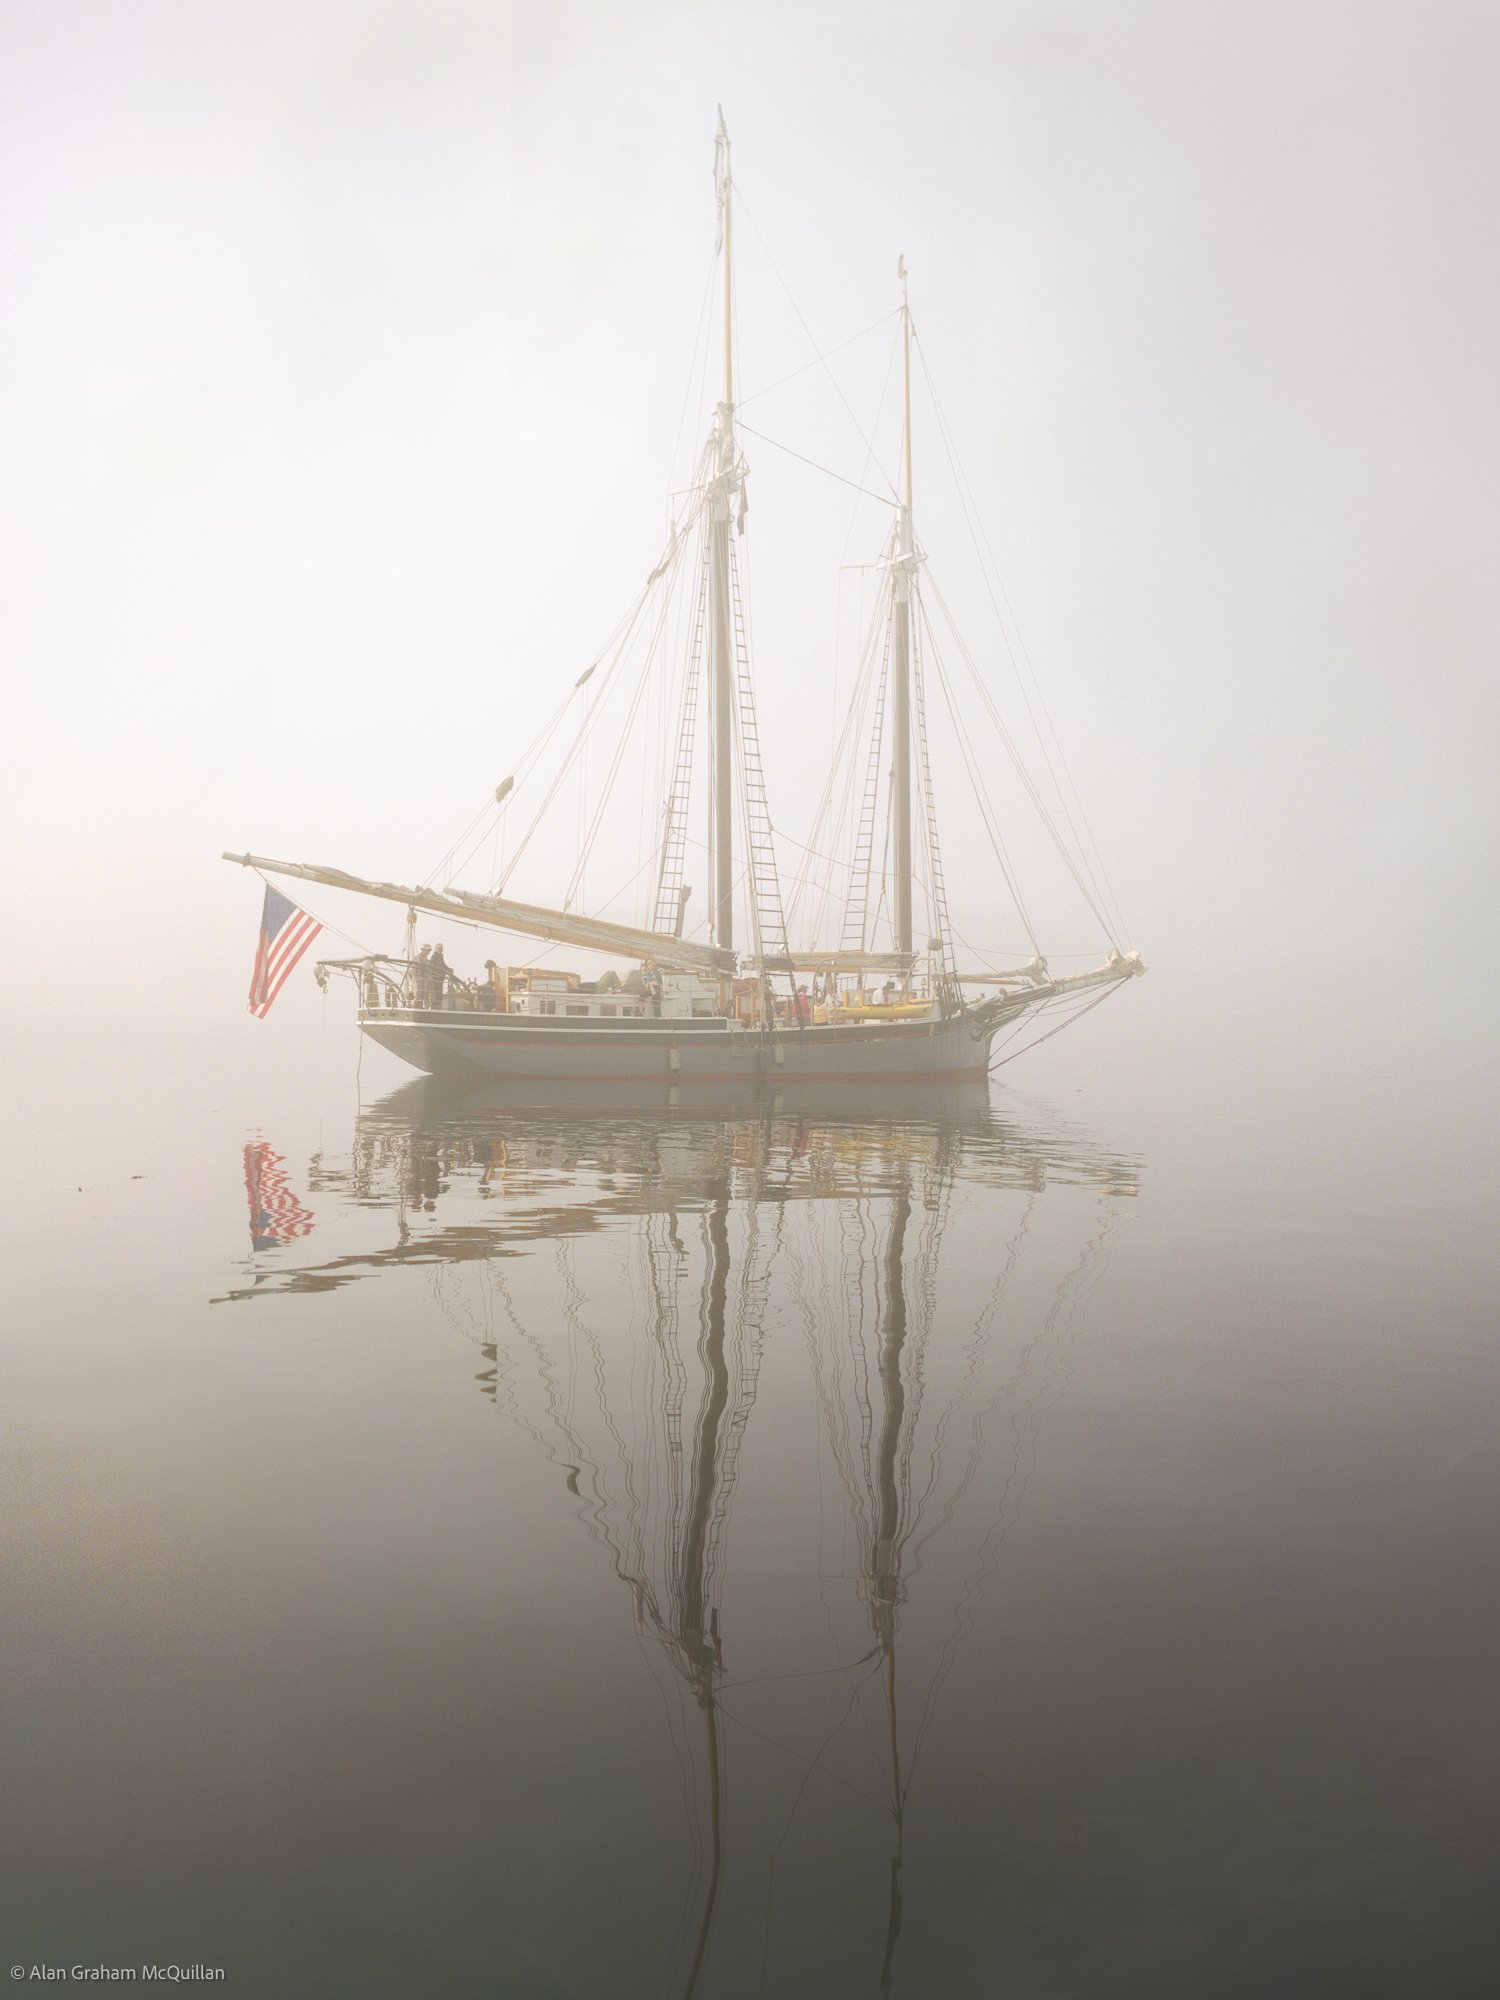 Schooner 'Lewis R. French' in fog, Penobscot Bay, Maine